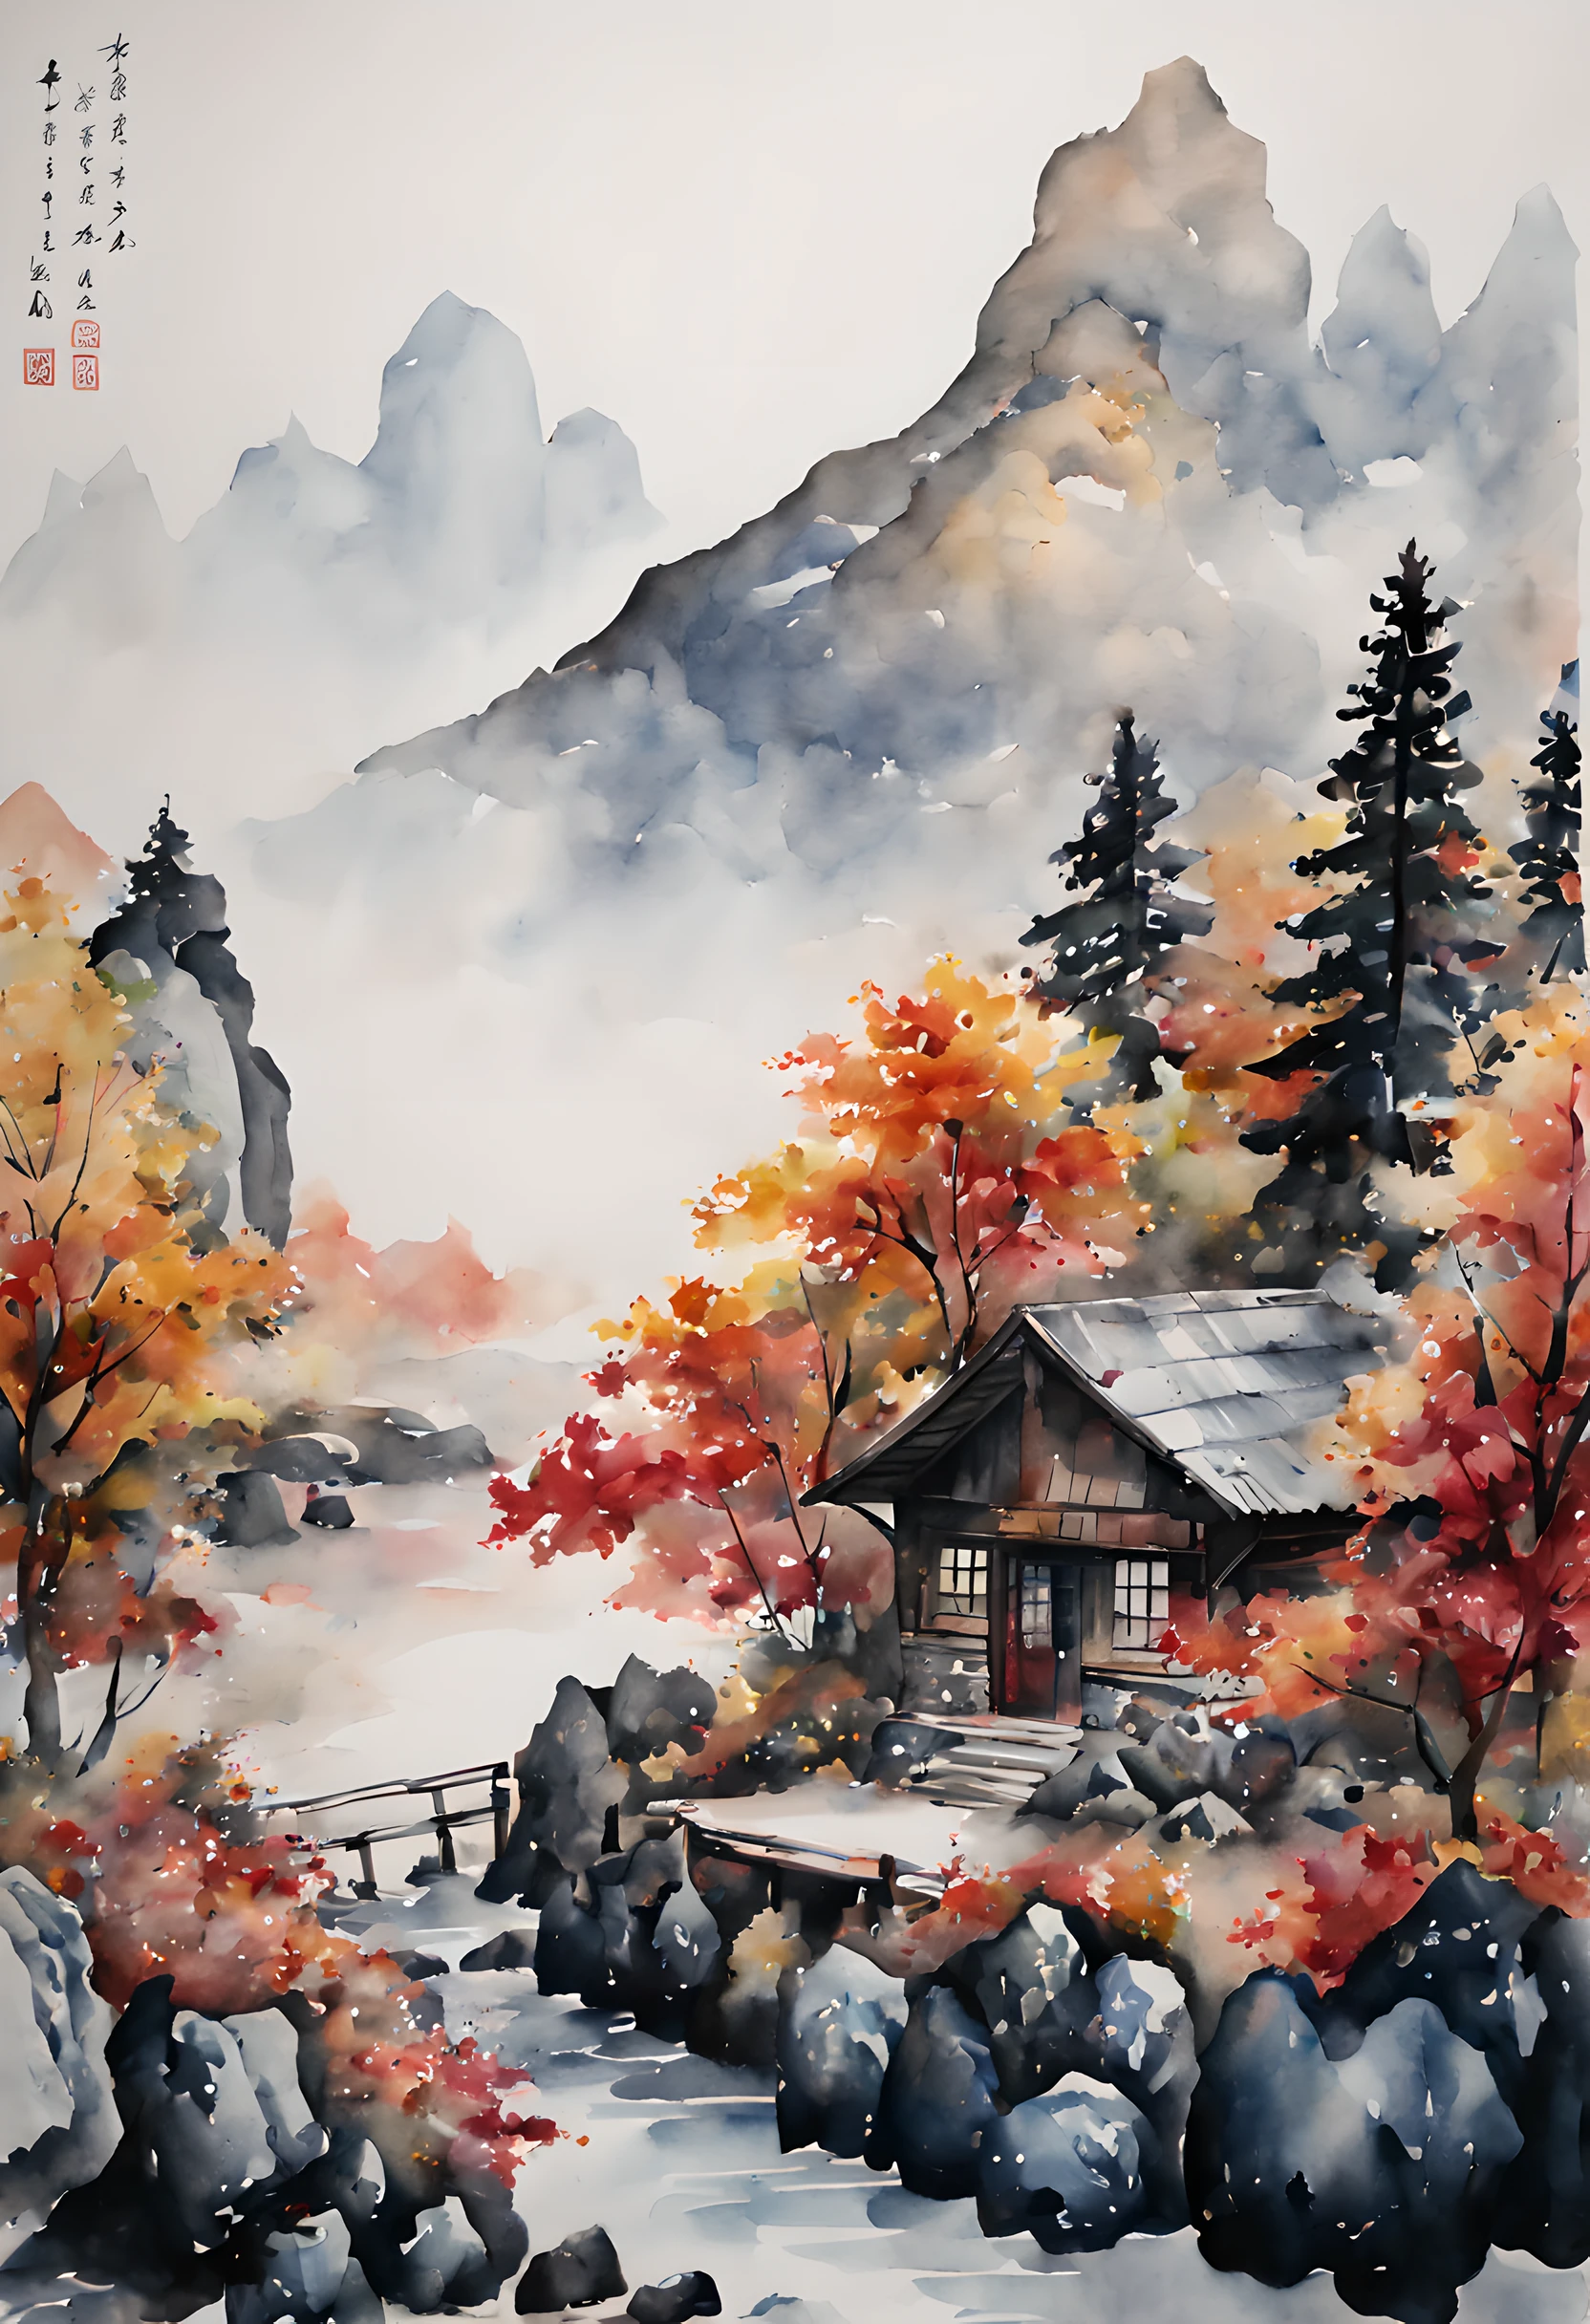 (การวาดภาพด้วยหมึกและสีน้ำ:1.5), (จิตรกรรมภูมิทัศน์:1.5), (กระท่อมบนภูเขา (กระท่อมบนภูเขา):1.5), (มีรสนิยมดี:1.5), (Autumn กระท่อมบนภูเขา (秋 กระท่อมบนภูเขา):1.5), (สวิตเซอร์แลนด์:1.5), (เทือกเขาแอลป์:1.5), (ใบไม้หลากสี:1.5), (หิน:1.5，(ต้นไม้:1.5)，(การวาดภาพด้วยหมึกและสีน้ำ:1.5)，(สไตล์จีน:1.5)